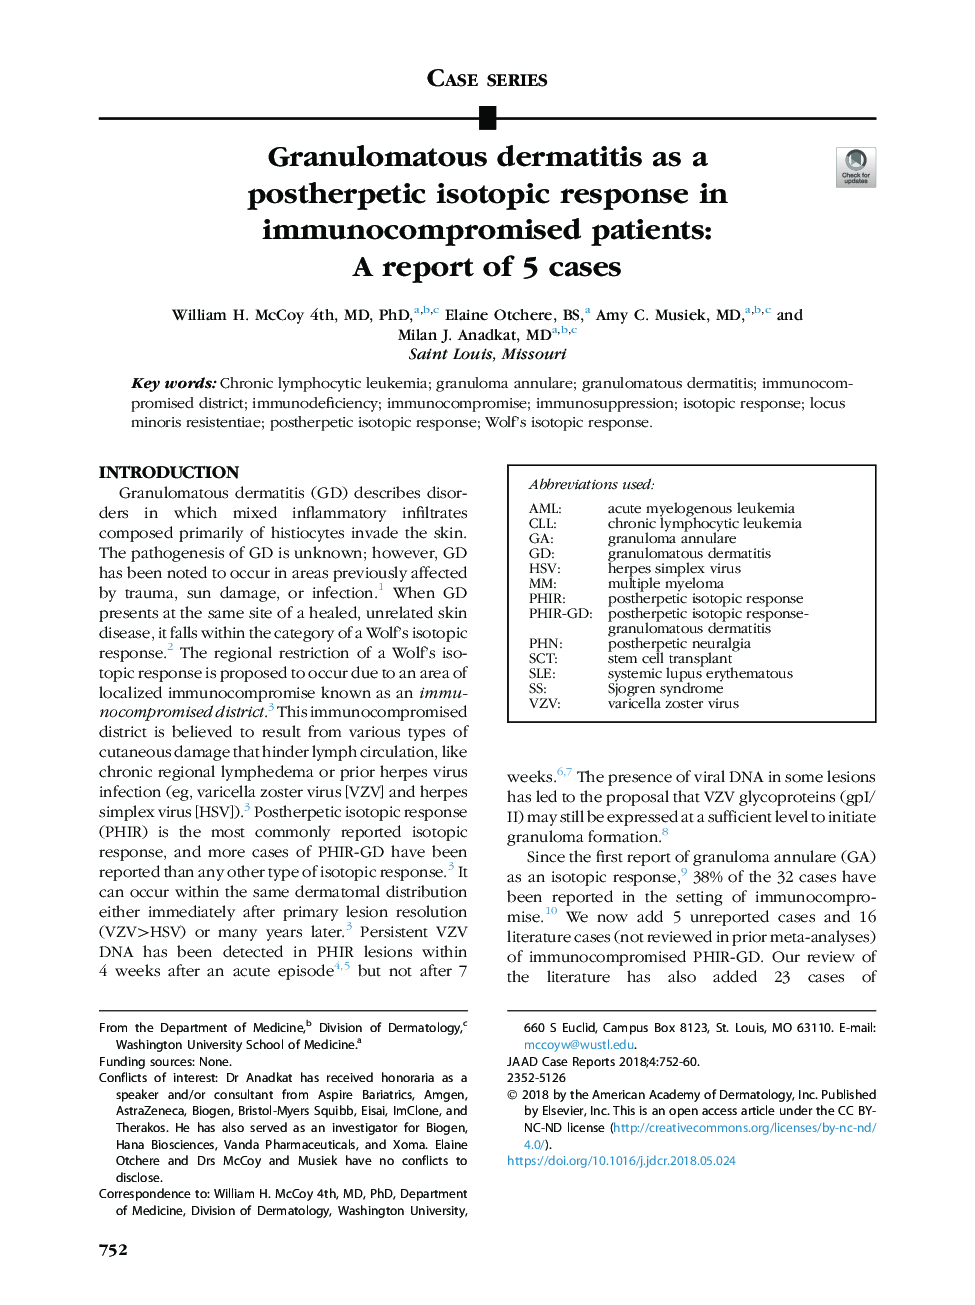 درماتیت گرانولوماتوز به عنوان یک پاسخ ایزوتوپ پسربپتیک در بیماران مبتلا به اسهال: گزارش 5 مورد